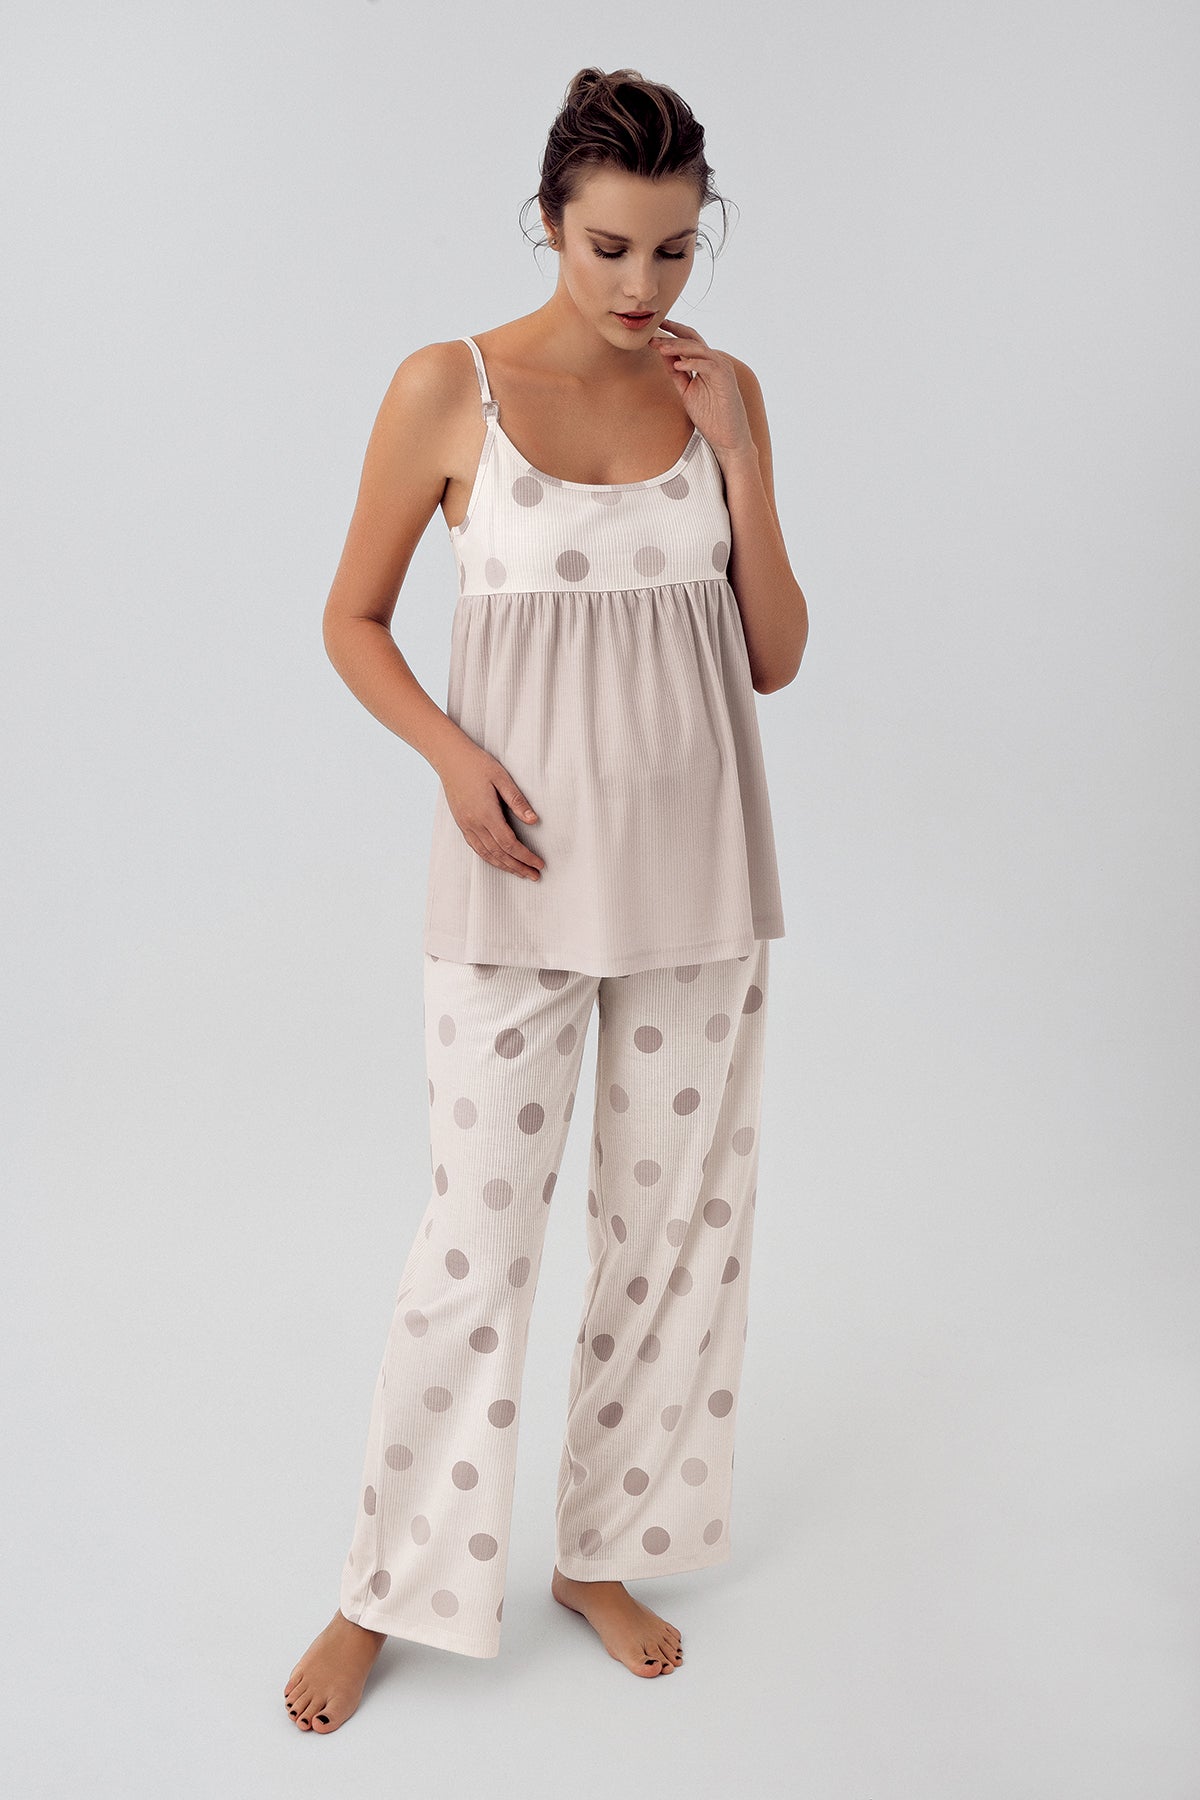 Shopymommy 16201 Polka Dot Strap Maternity & Nursing Pajamas Beige